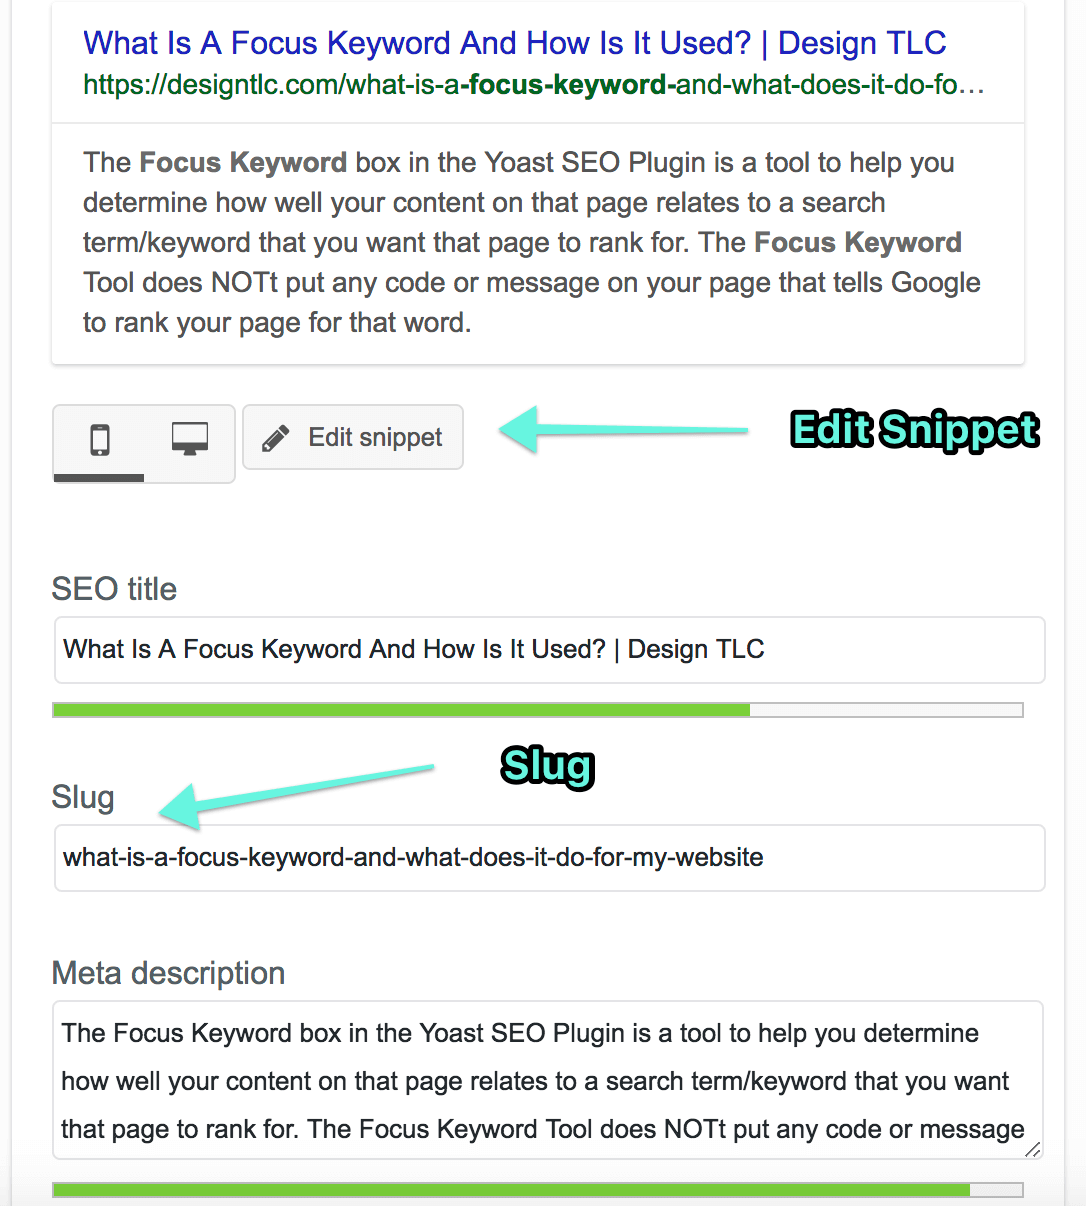 Чтобы отредактировать Slug, SEO-заголовок или мета-описание в плагине Yoast, просто нажмите кнопку «Редактировать фрагмент» в редакторе Yoast внизу страницы или сообщения